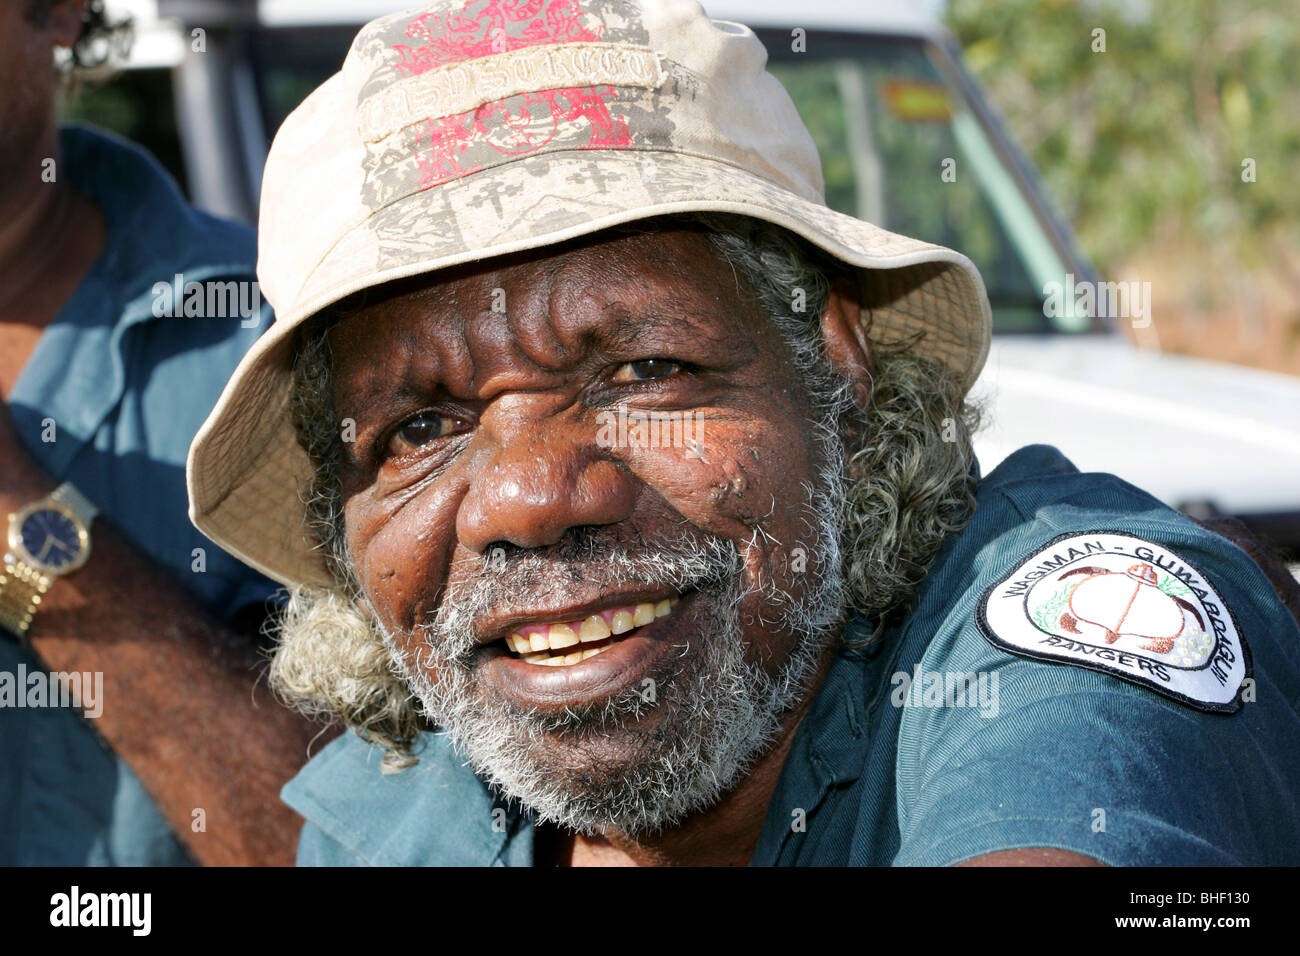 Wagiman-Guwardagun Rangers, Aboriginal Landbesitzer um Pine Creek, Nordaustralien. Jabul Huddleston chief Ranger. Stockfoto